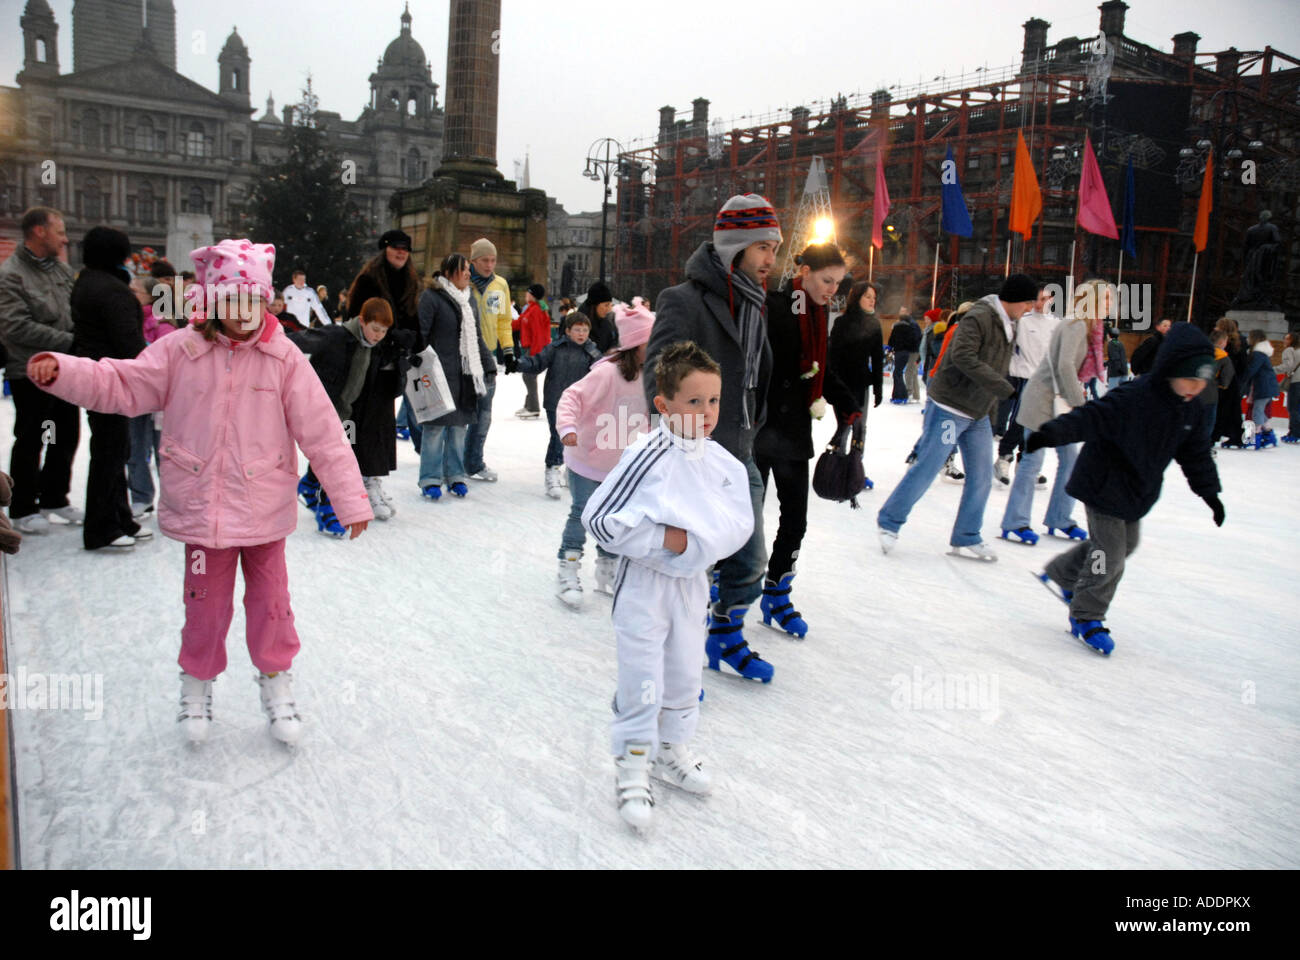 Patin à glace sur la patinoire de plein air, George Square. Les chambres de la ville en arrière-plan. Glasgow. L'Écosse. Xmas Banque D'Images